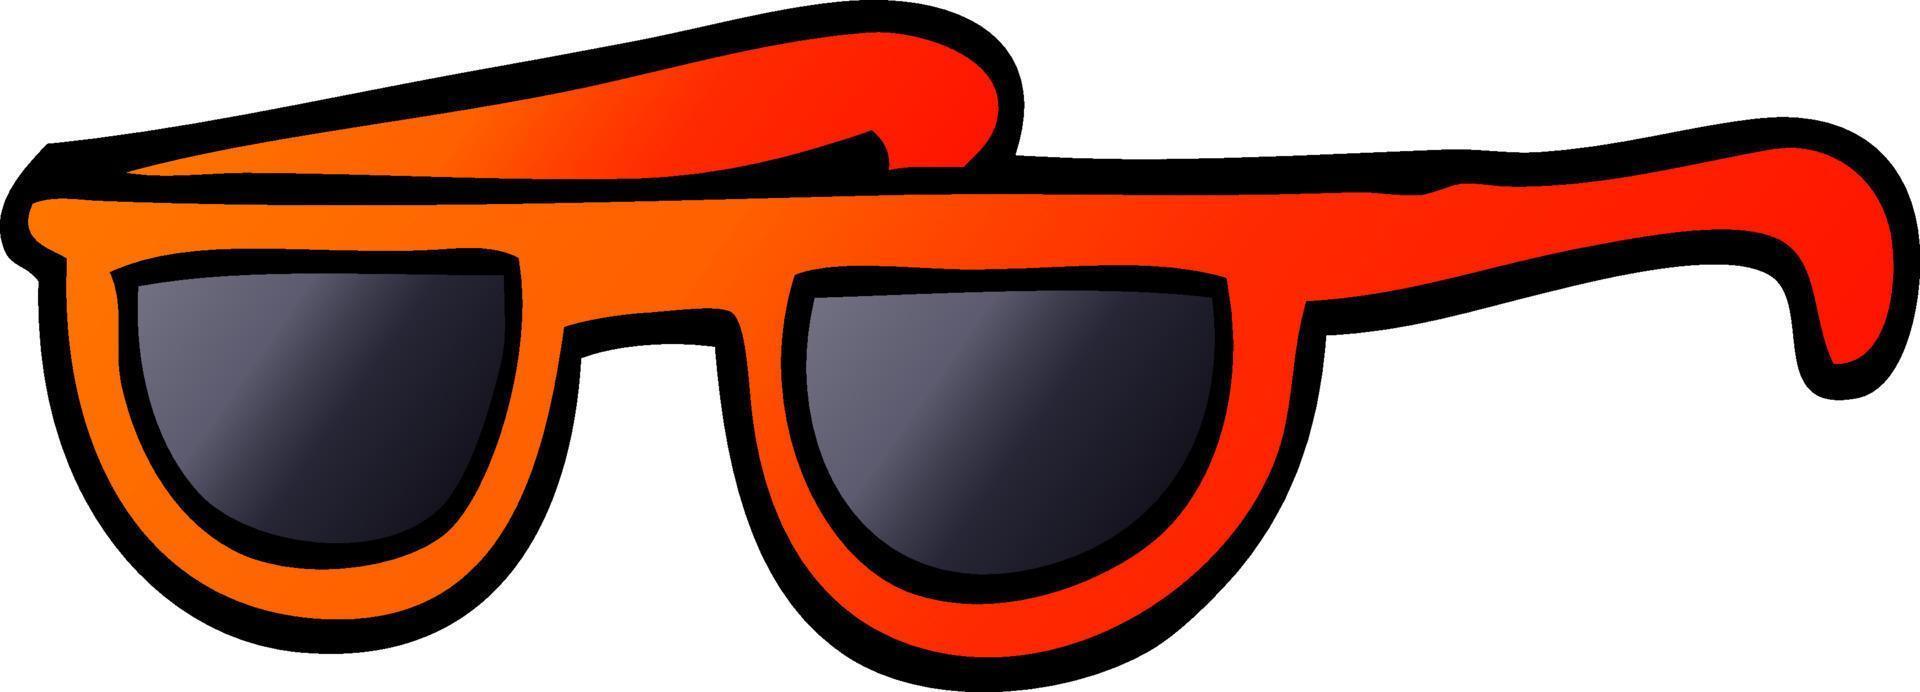 dessin animé doodle cool lunettes de soleil vecteur